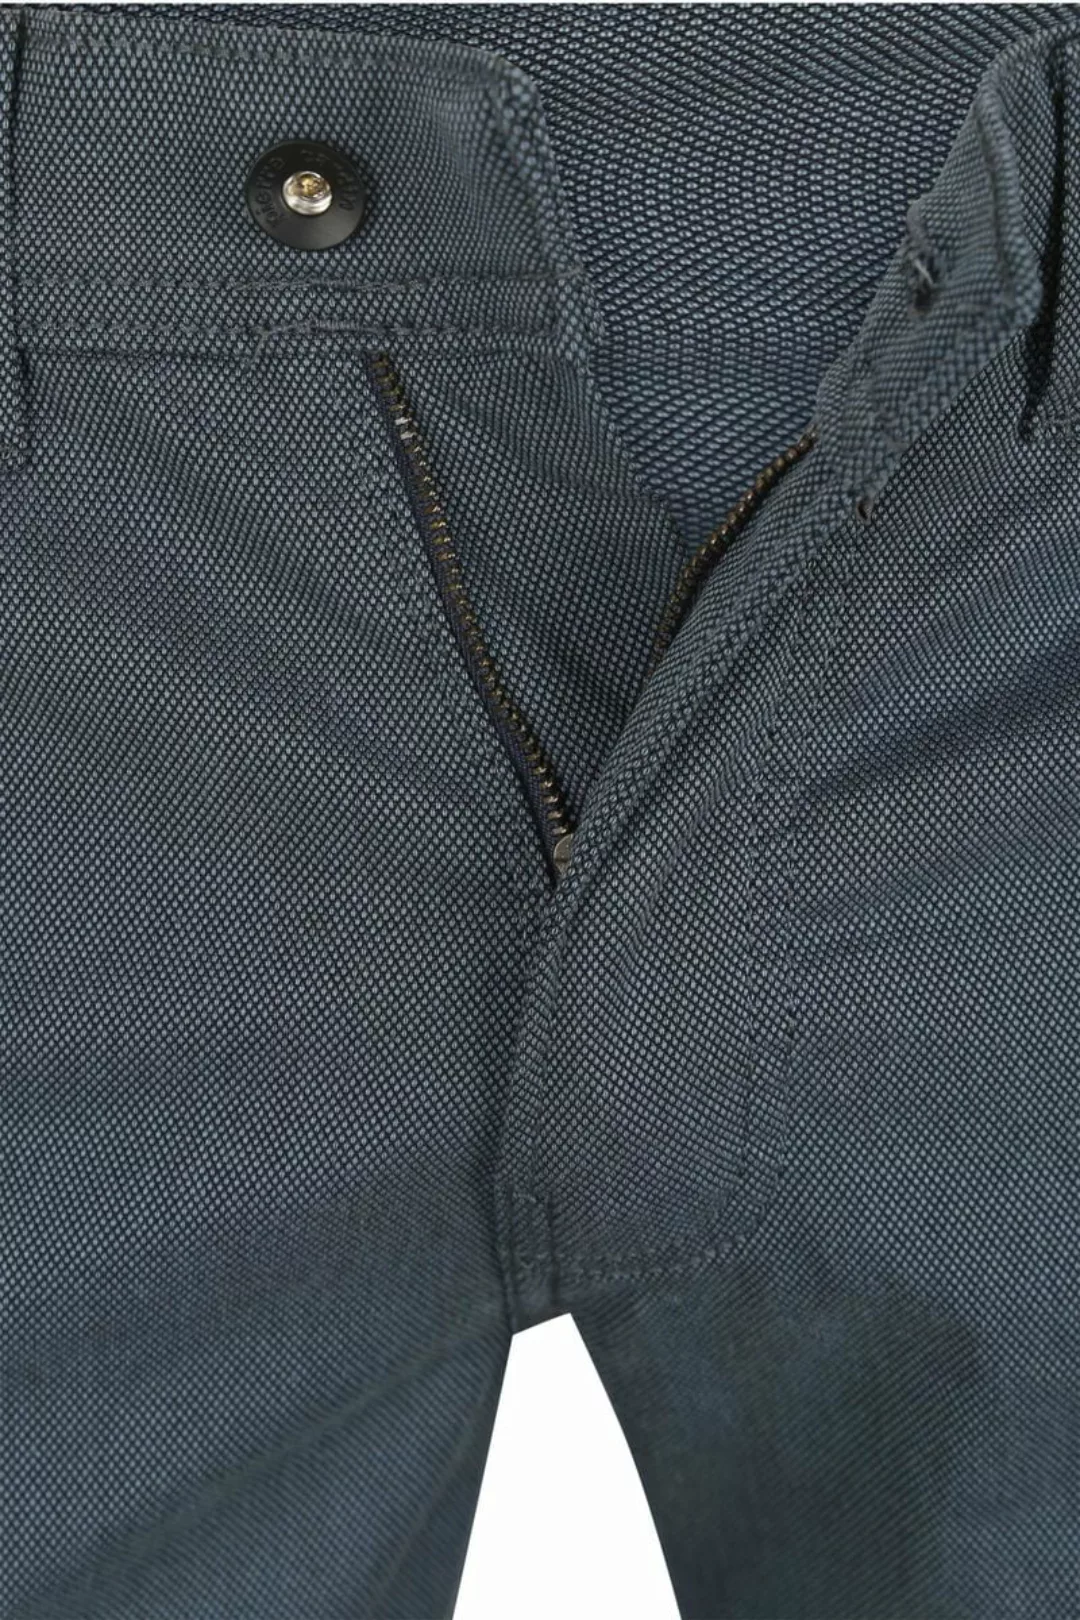 Pierre Cardin Trousers Lyon Tapered Ocean Blau - Größe W 36 - L 32 günstig online kaufen